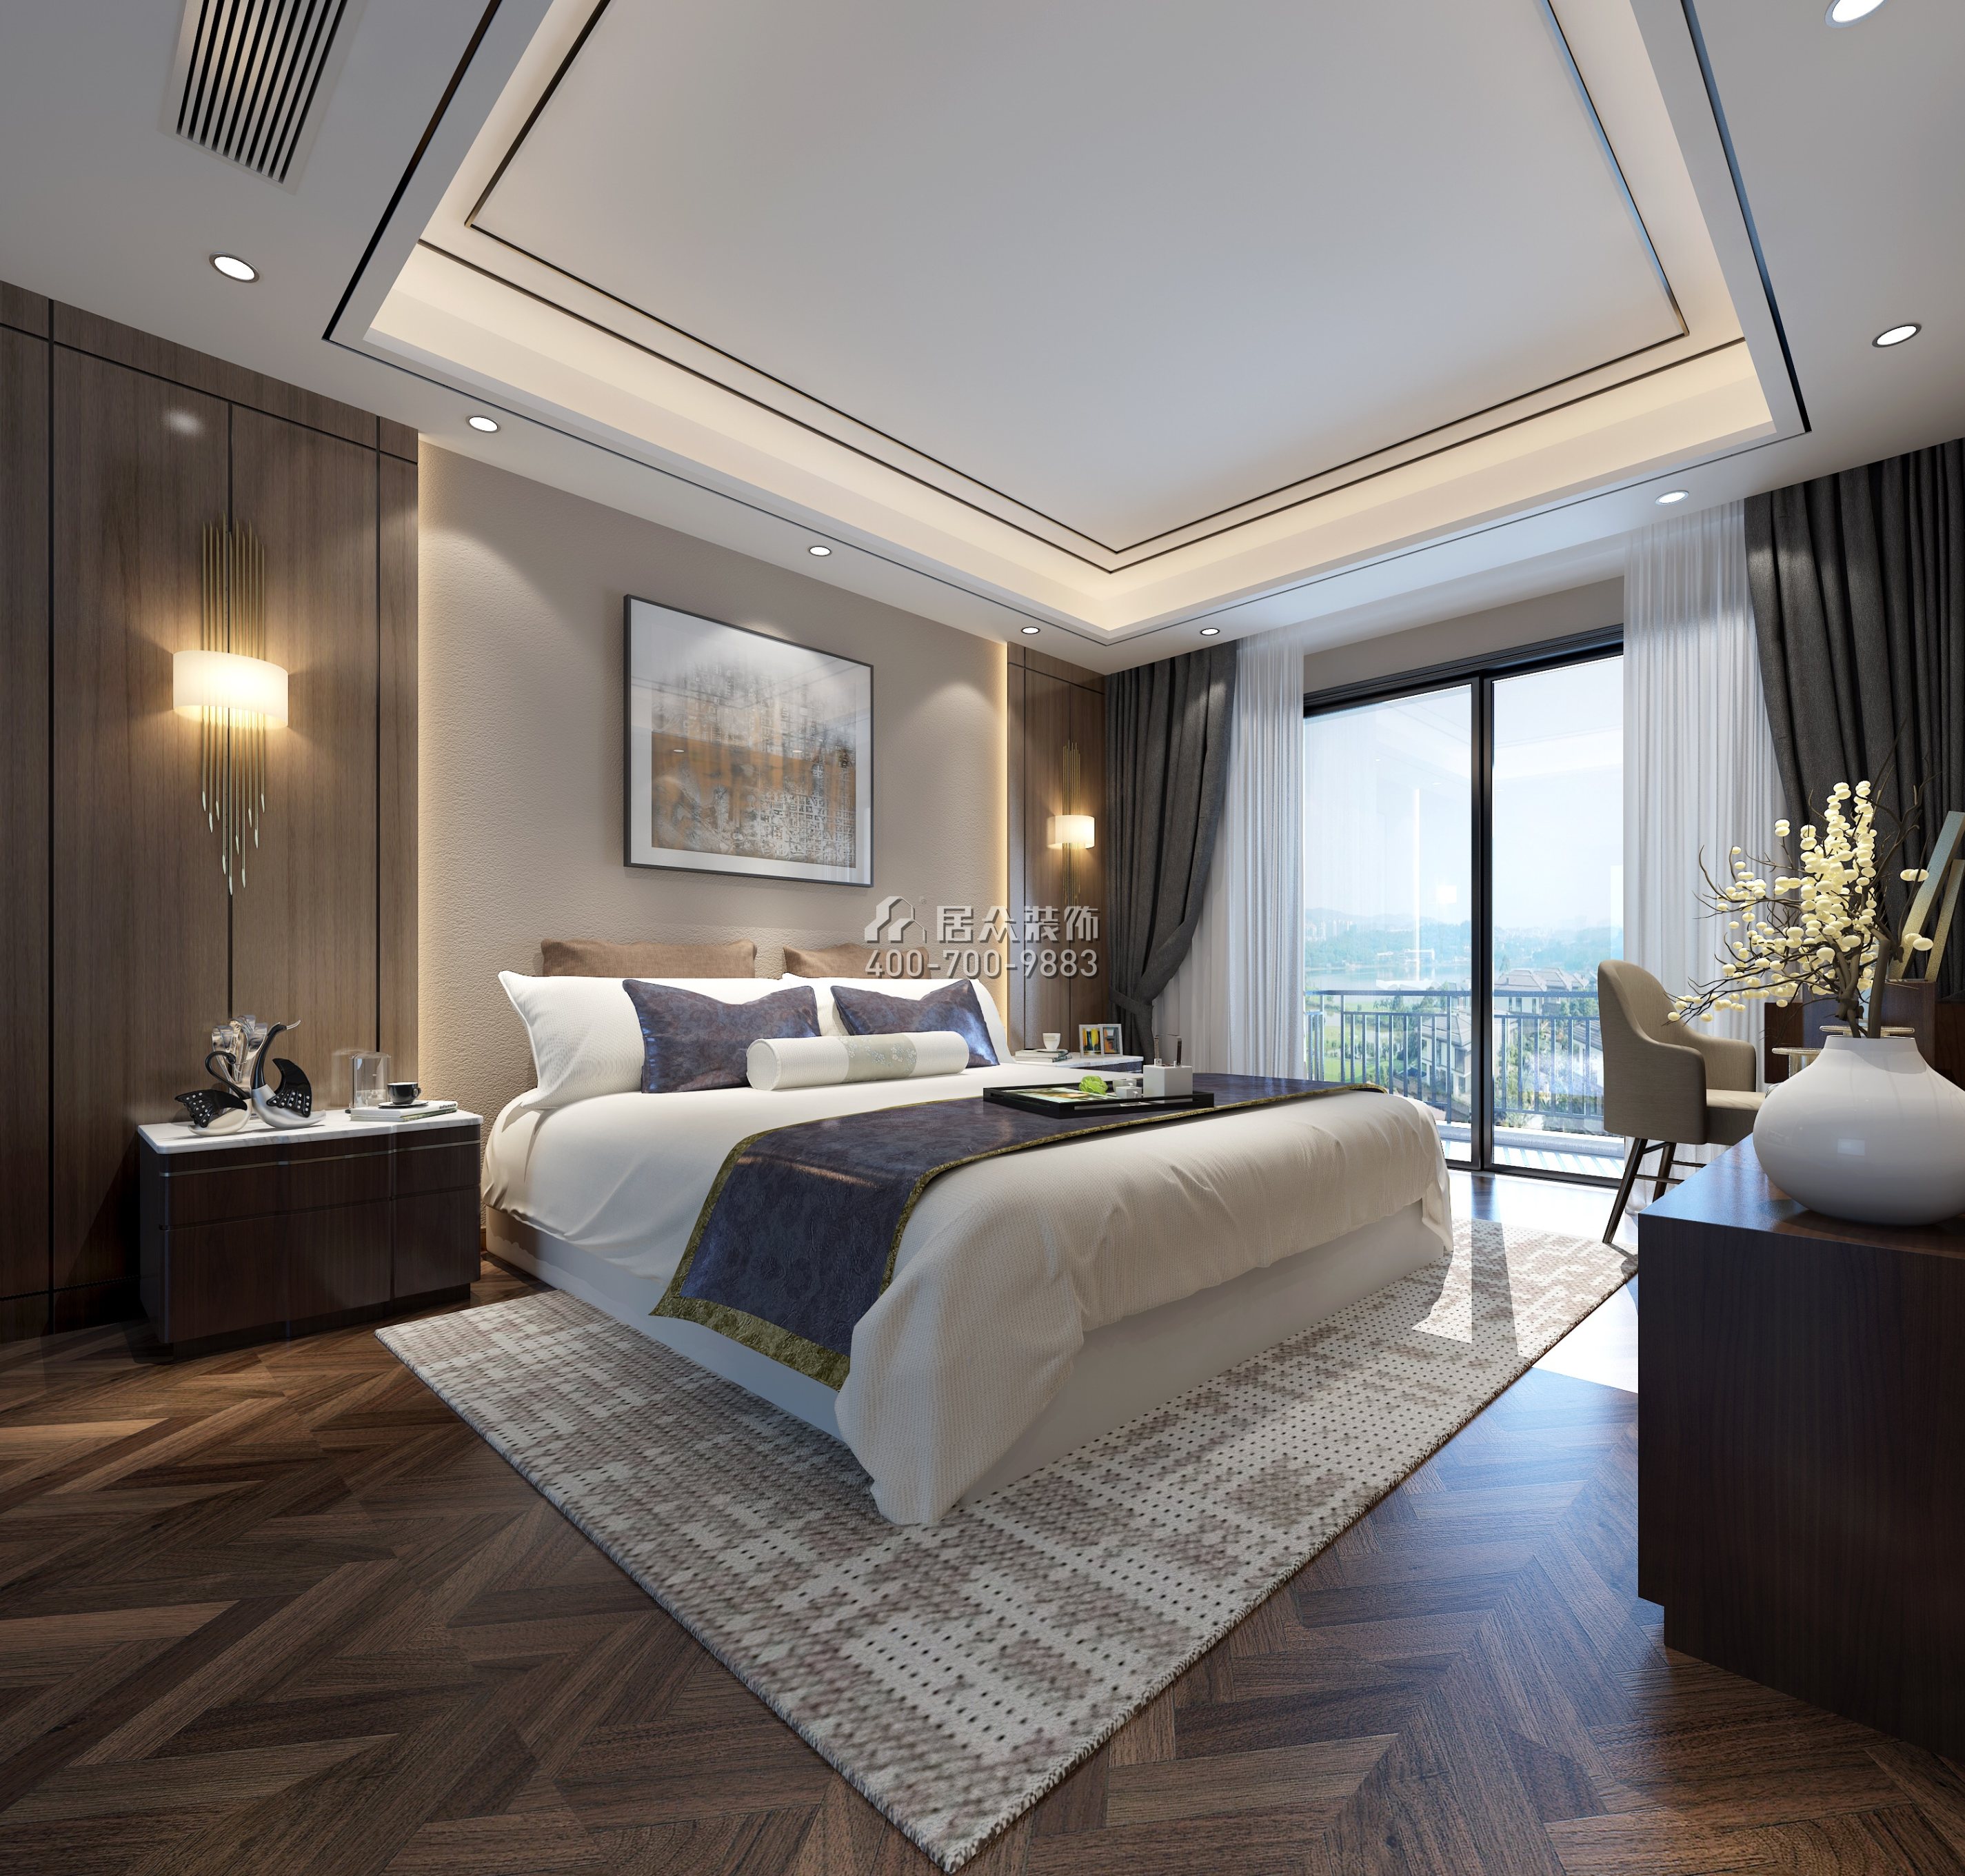 中骏蓝湾半岛130平方米现代简约风格平层户型卧室装修效果图